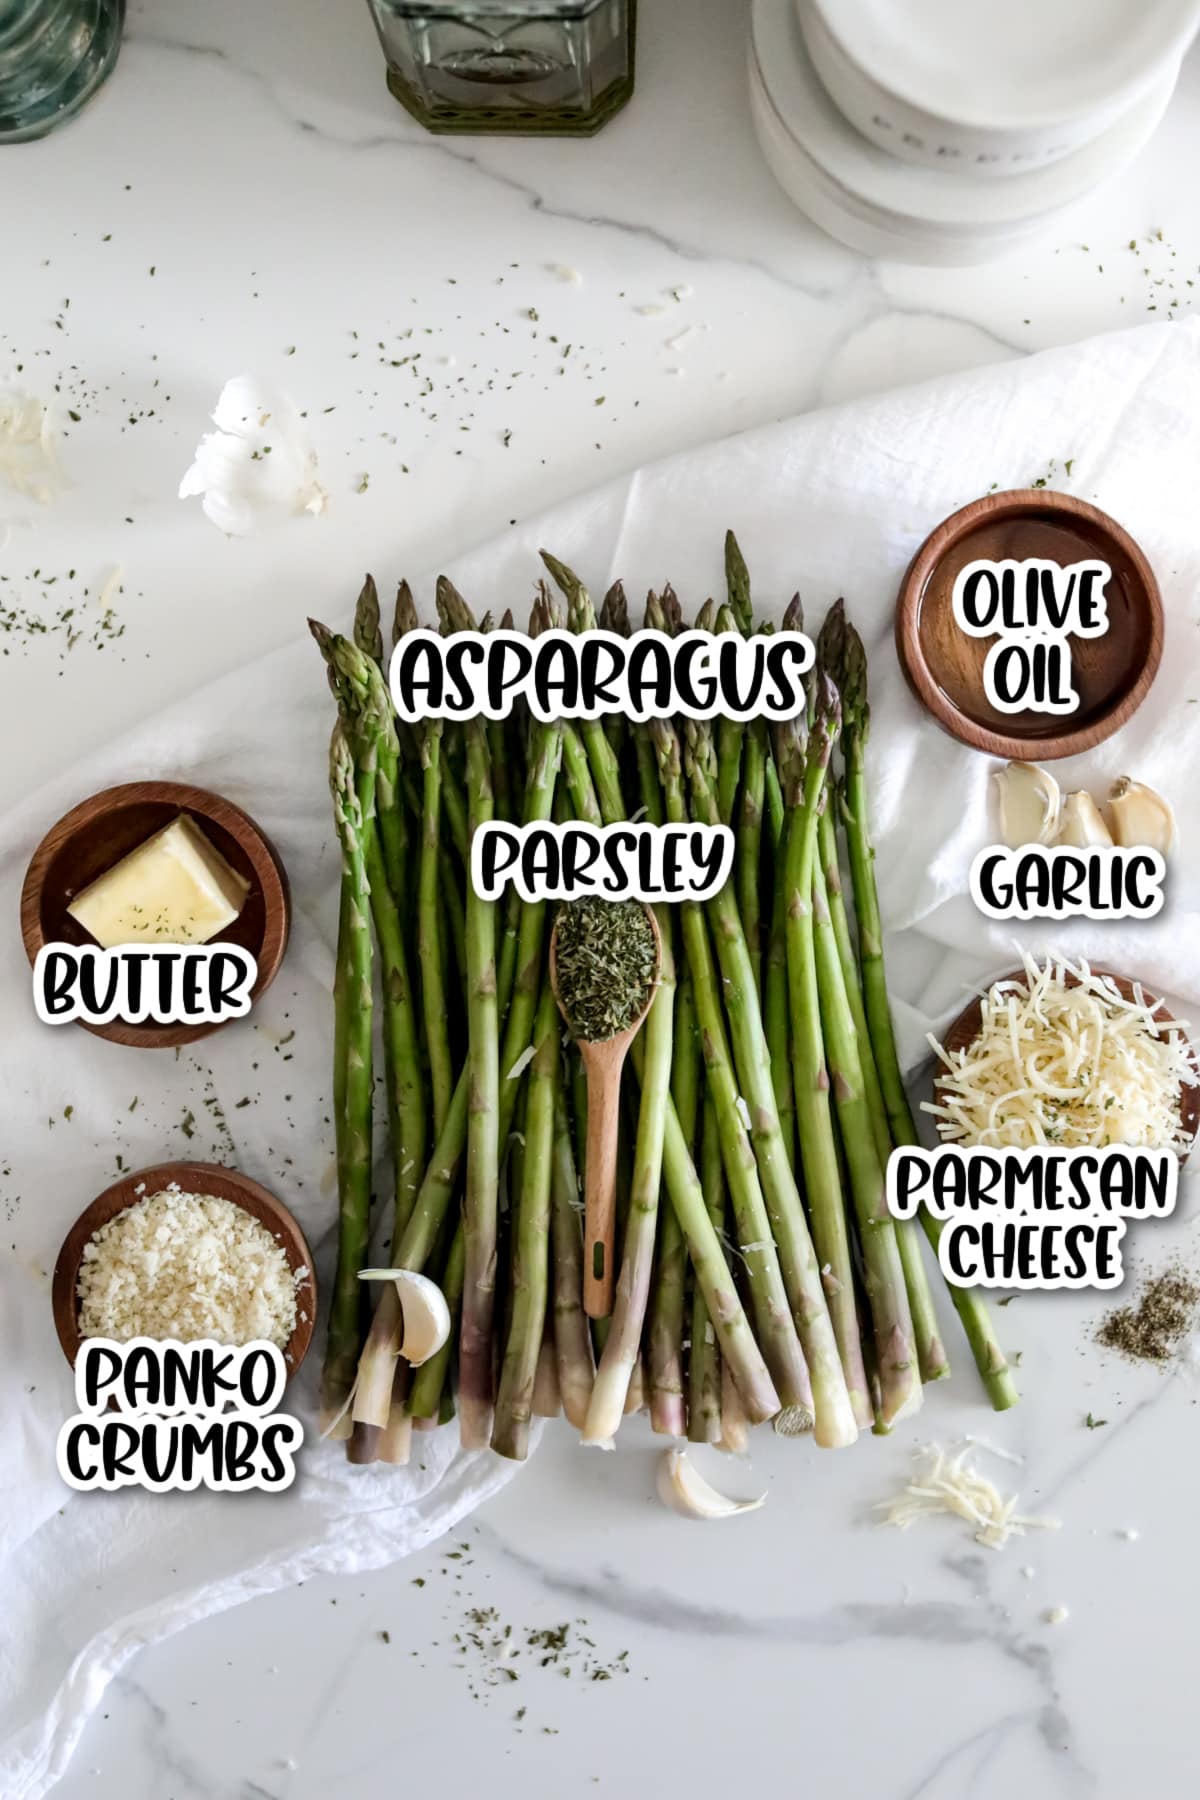 Ingredients for garlic parmesan asparagus